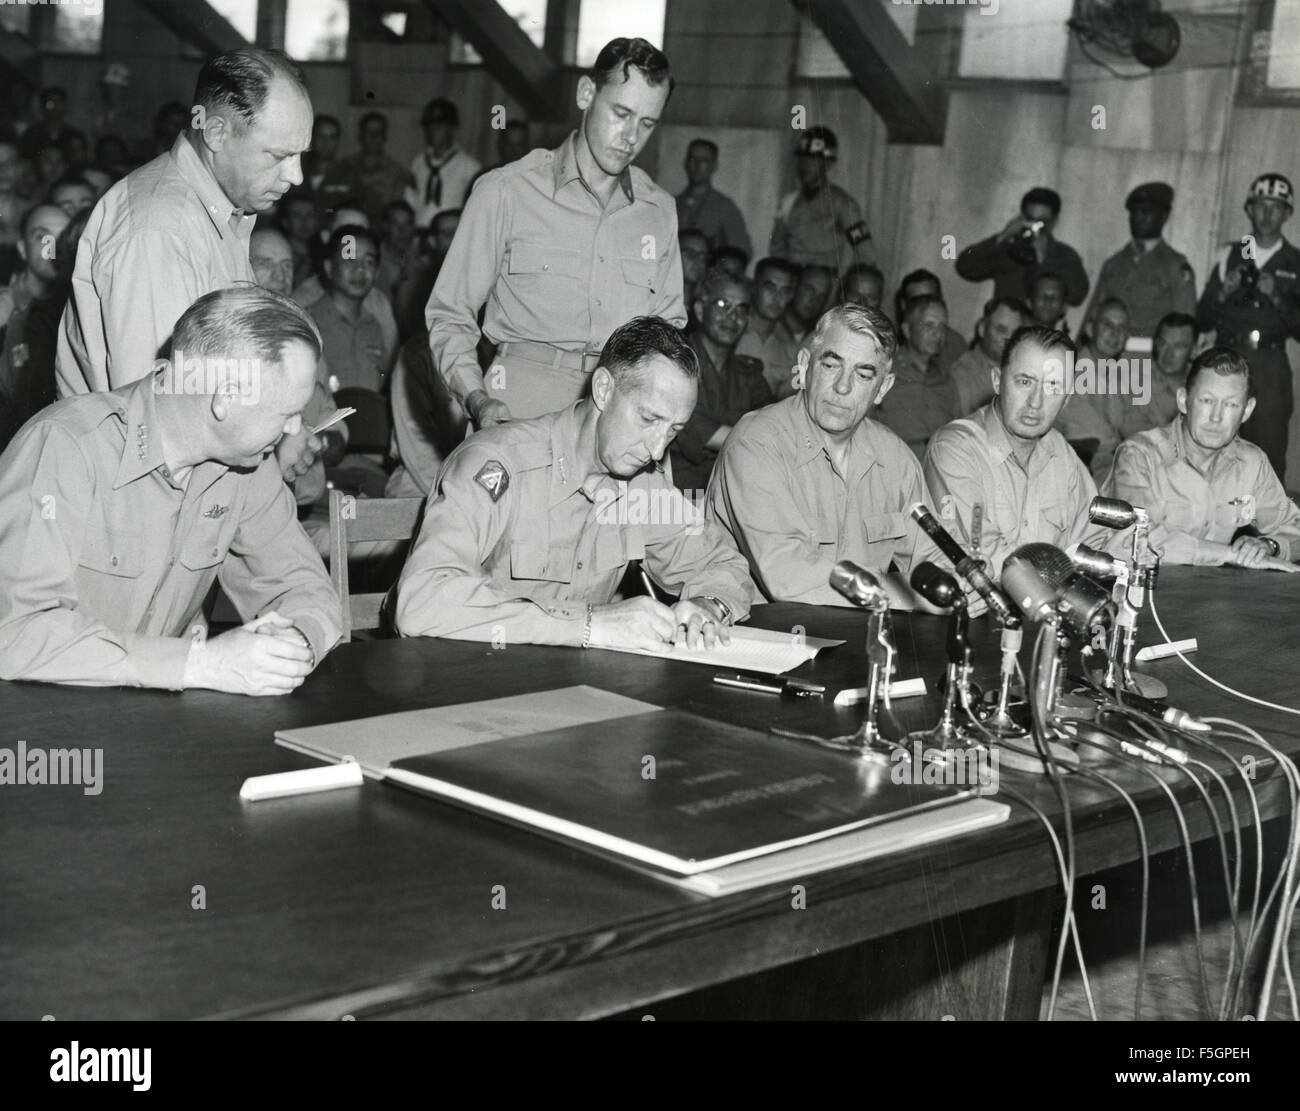 Armisticio de la guerra de Corea, firmado en Panmunjon 27 de julio de 1953. Teniente General del Ejército estadounidense William Harrison Jr. firma en nombre del comando de las Naciones Unidas. Foto US Navy Foto de stock